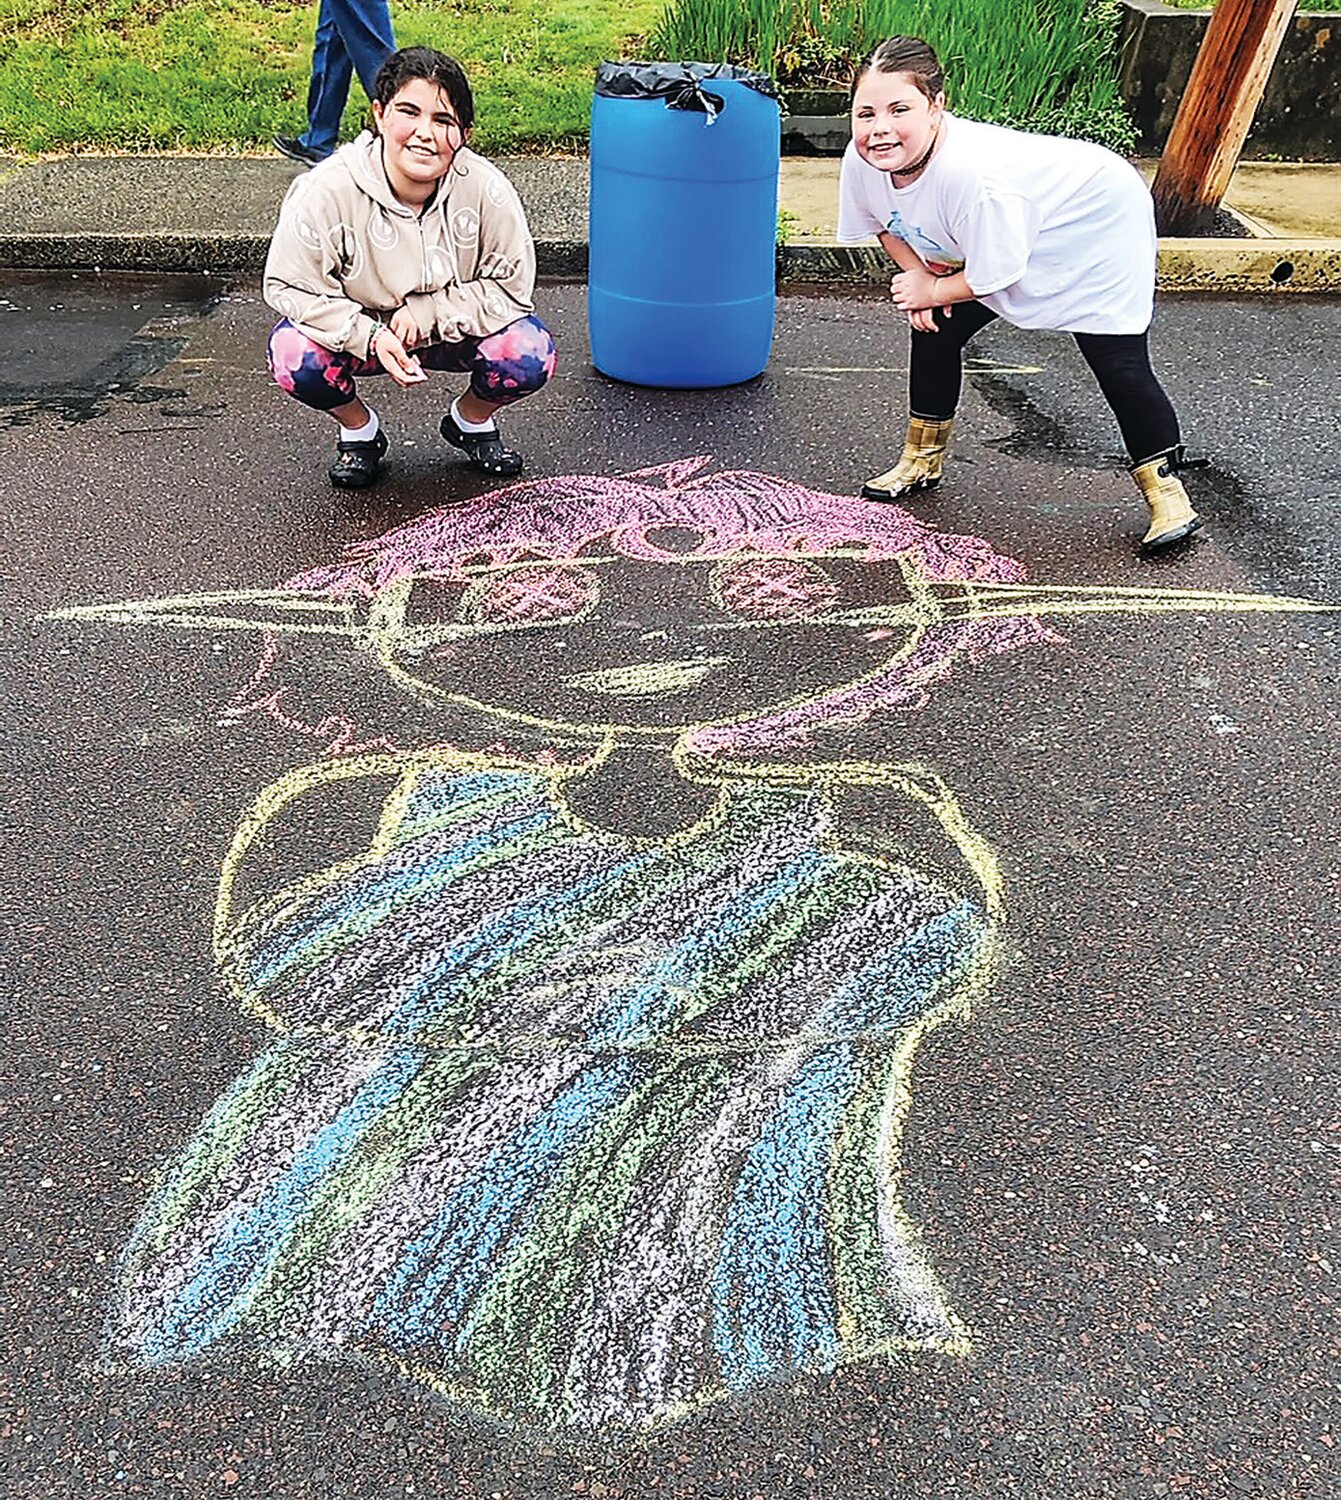 Emmaleen Maltese and Kileigh Henderson enjoy chalk art during the festival.